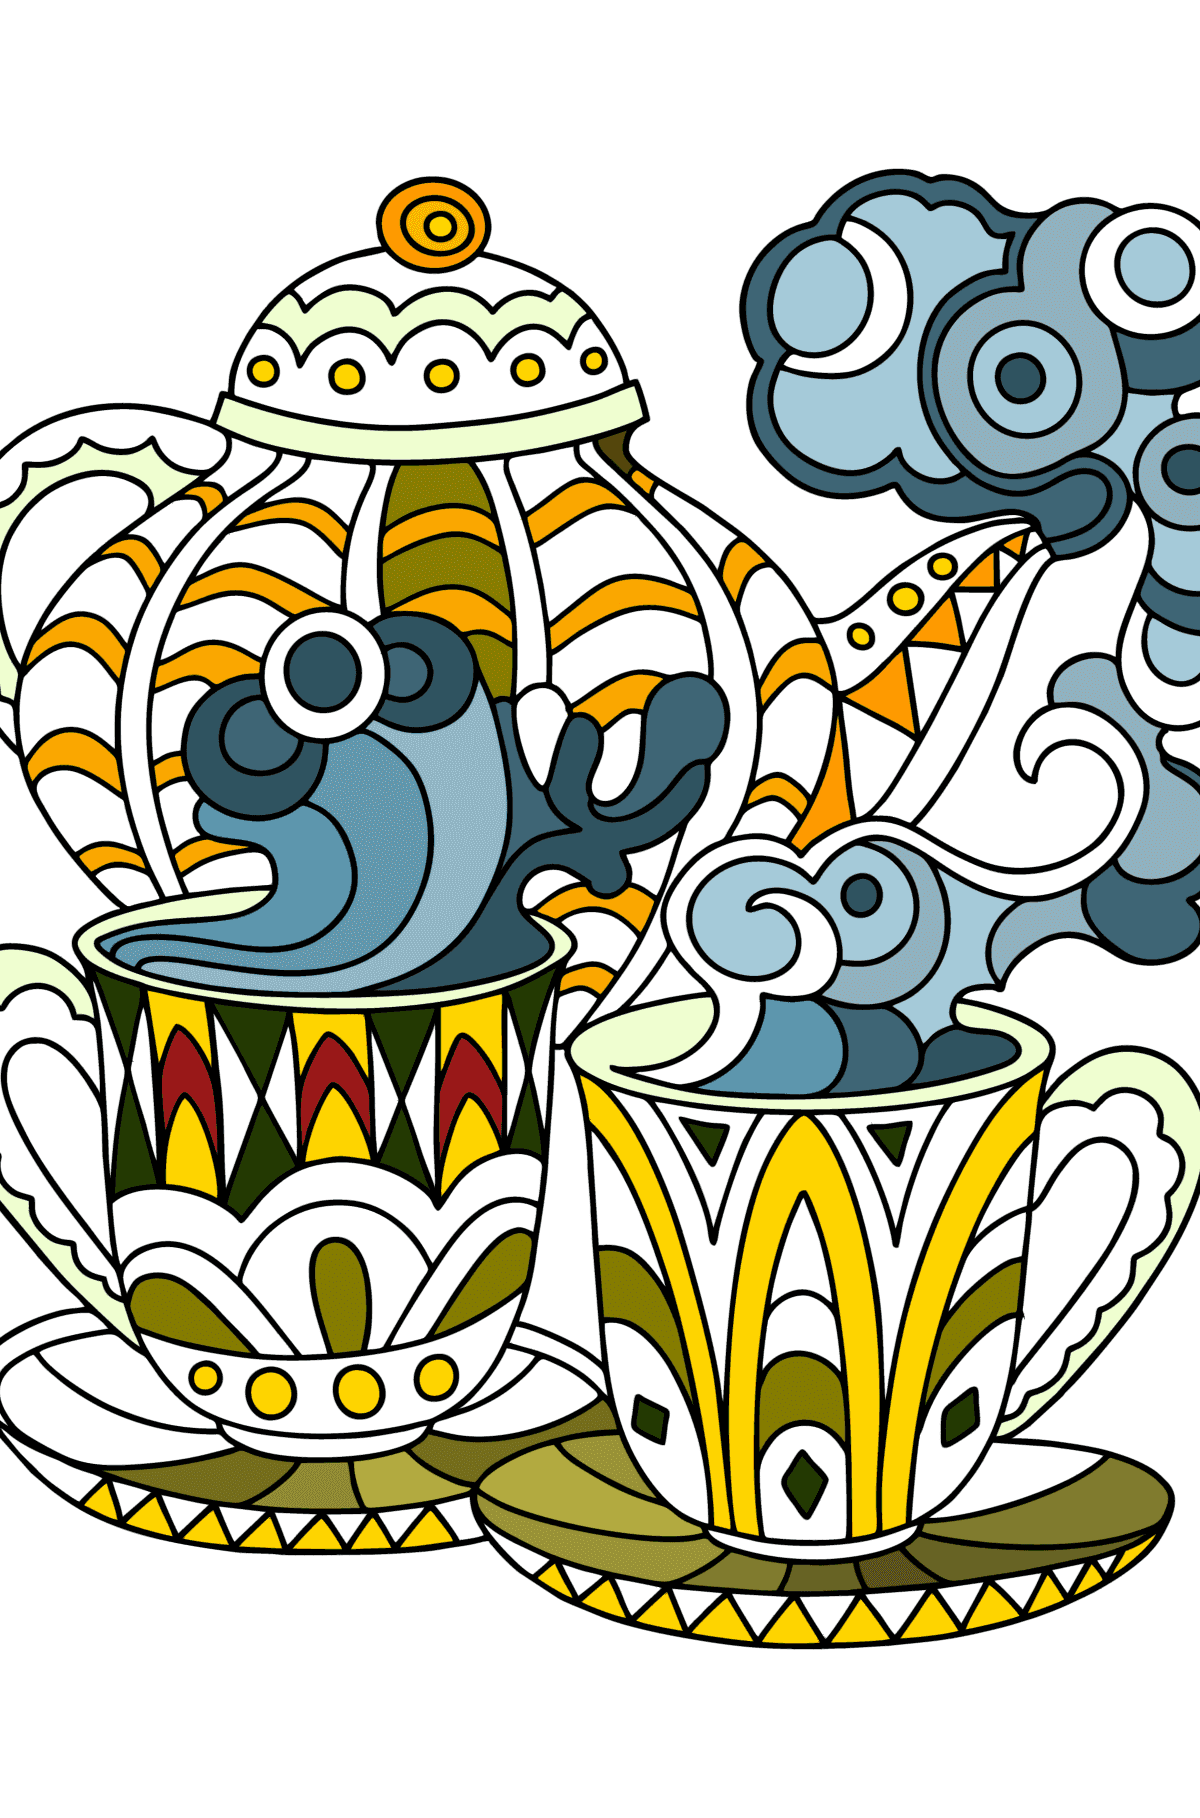 Dibujo para colorear Doodle para niños - Fiesta del té - Dibujos para Colorear para Niños